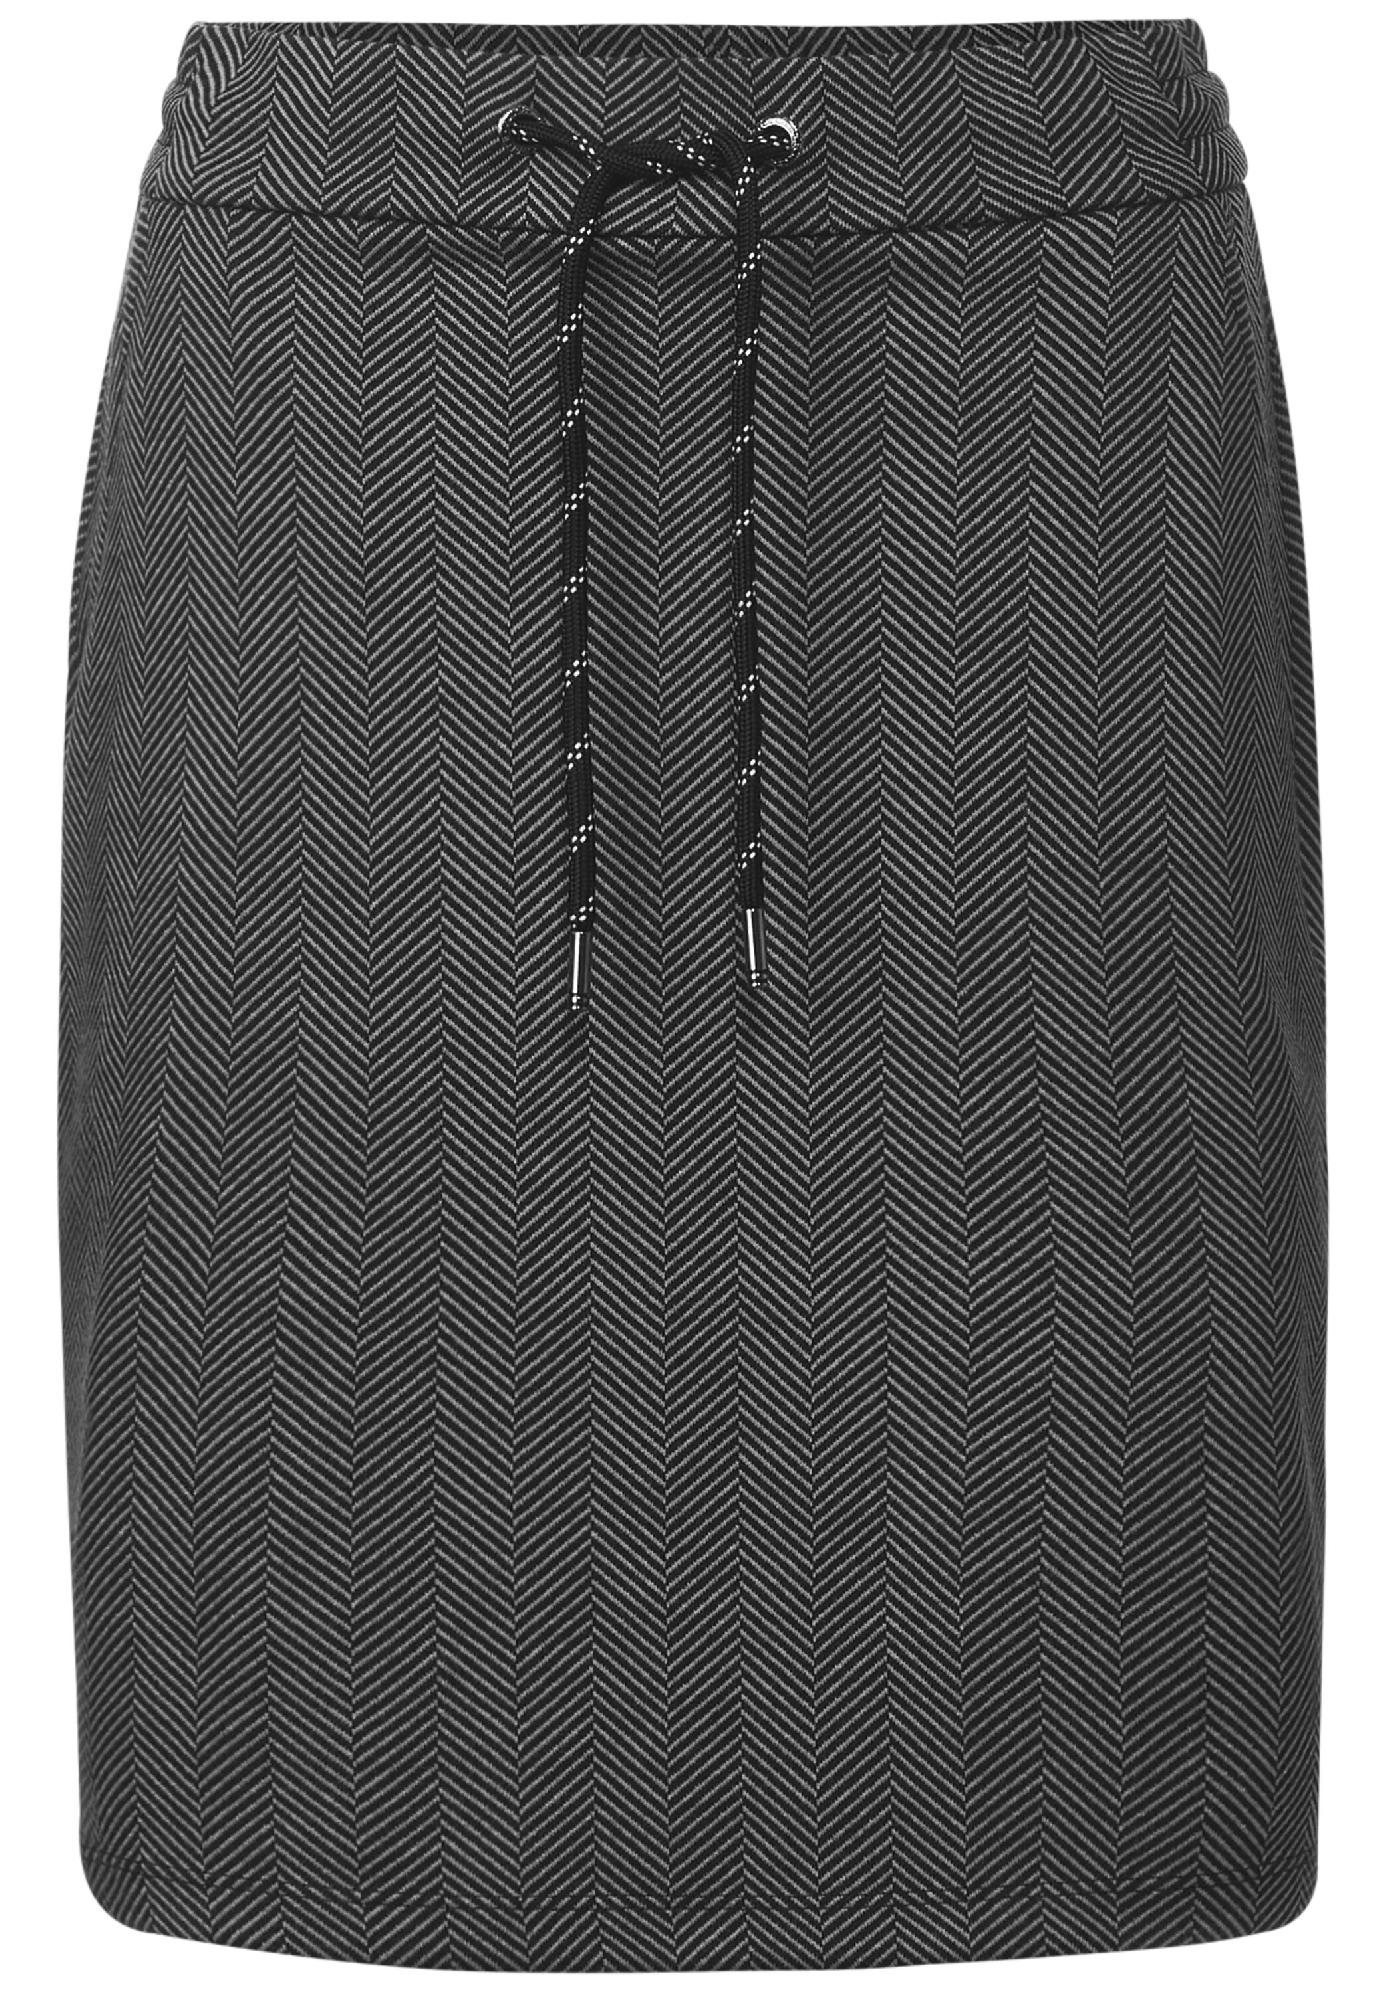 CECIL sukňa so vzorom TRACEY, čie